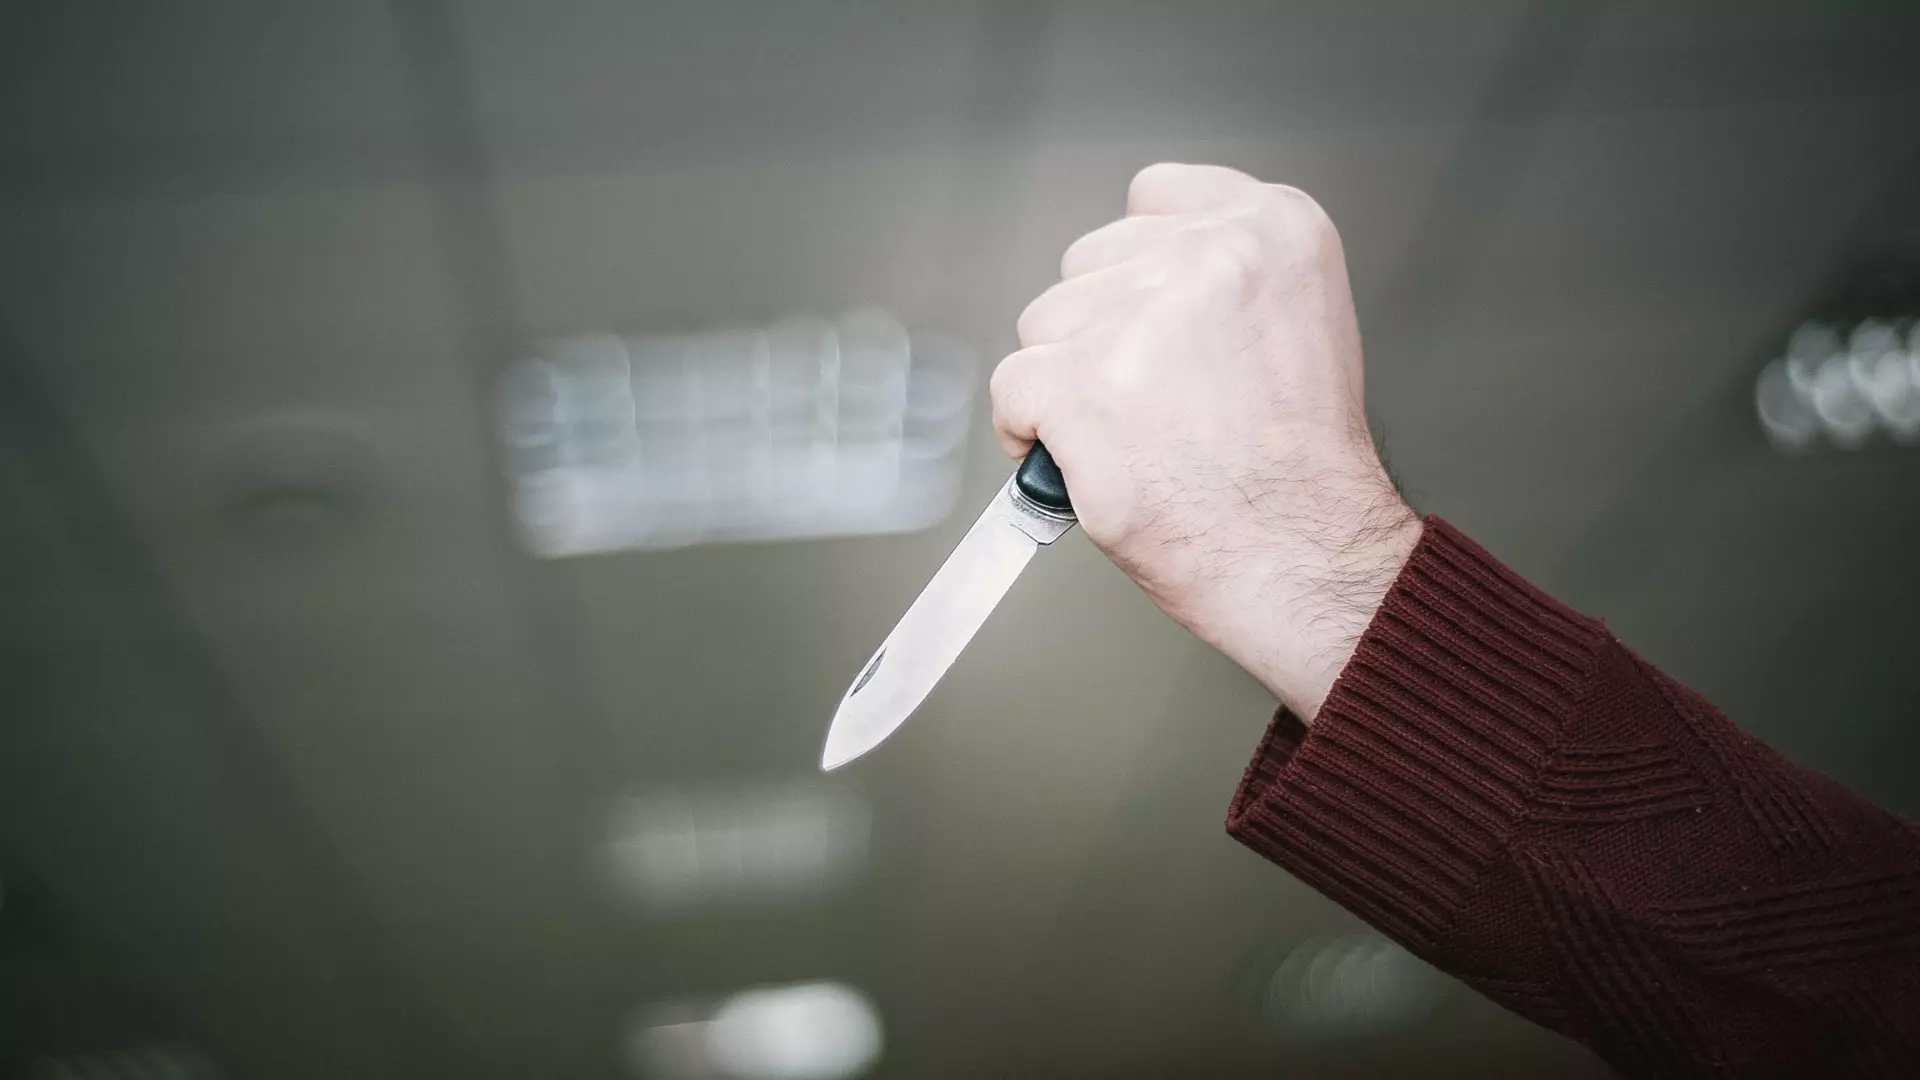 Незнакомец изнасиловал челябинку, угрожая ей ножом